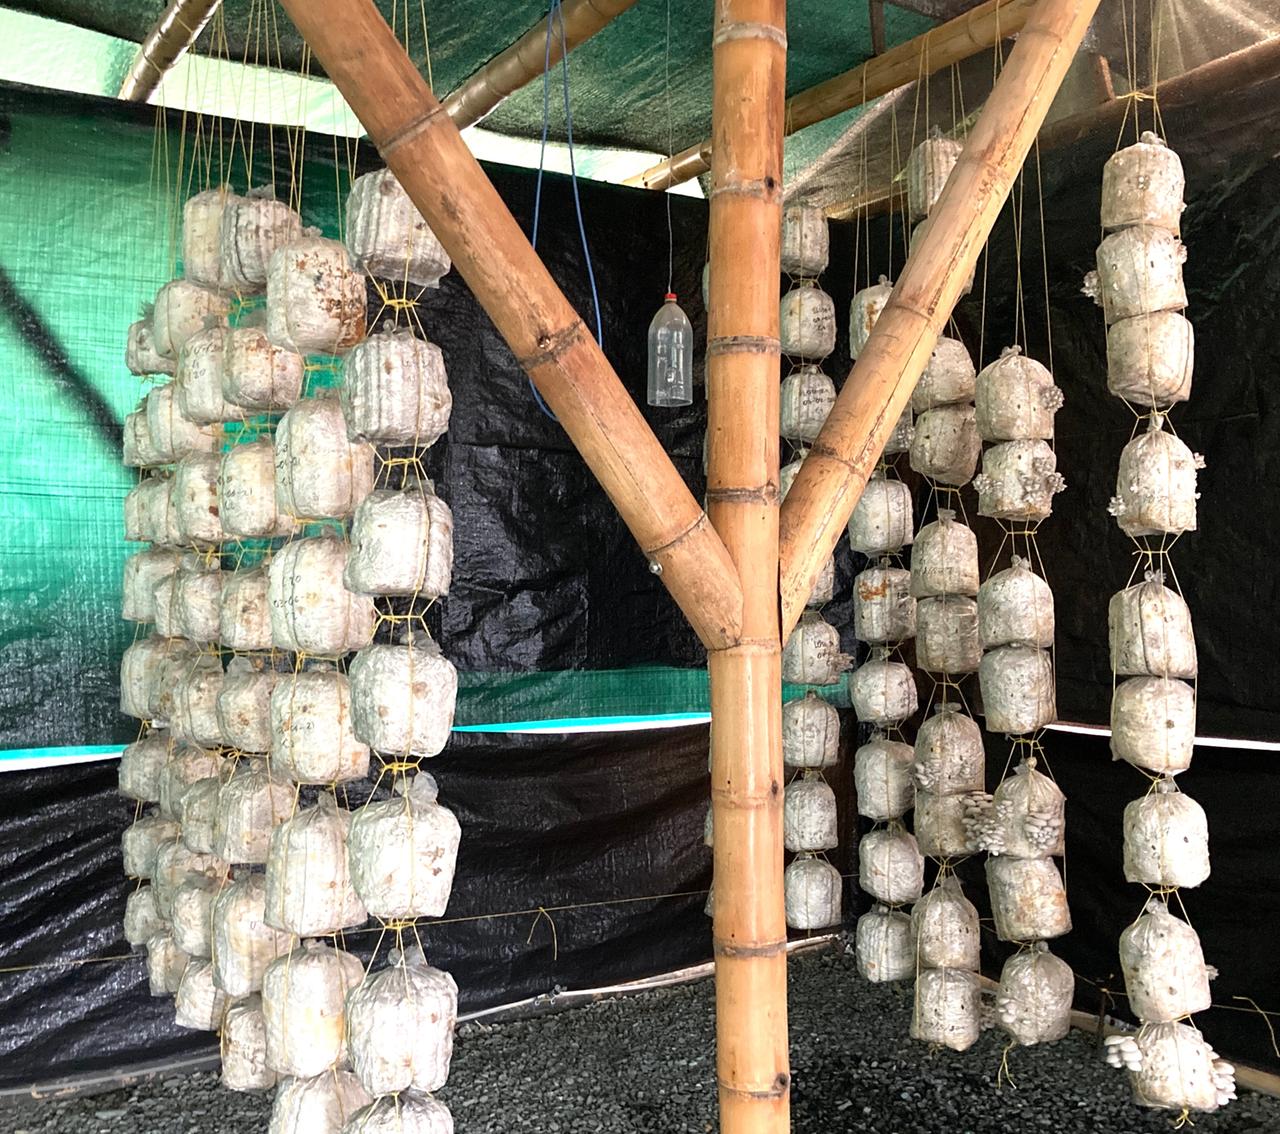 Pilzkulturen hängen aneinandergereiht in Behältern von einem Dachbalken.